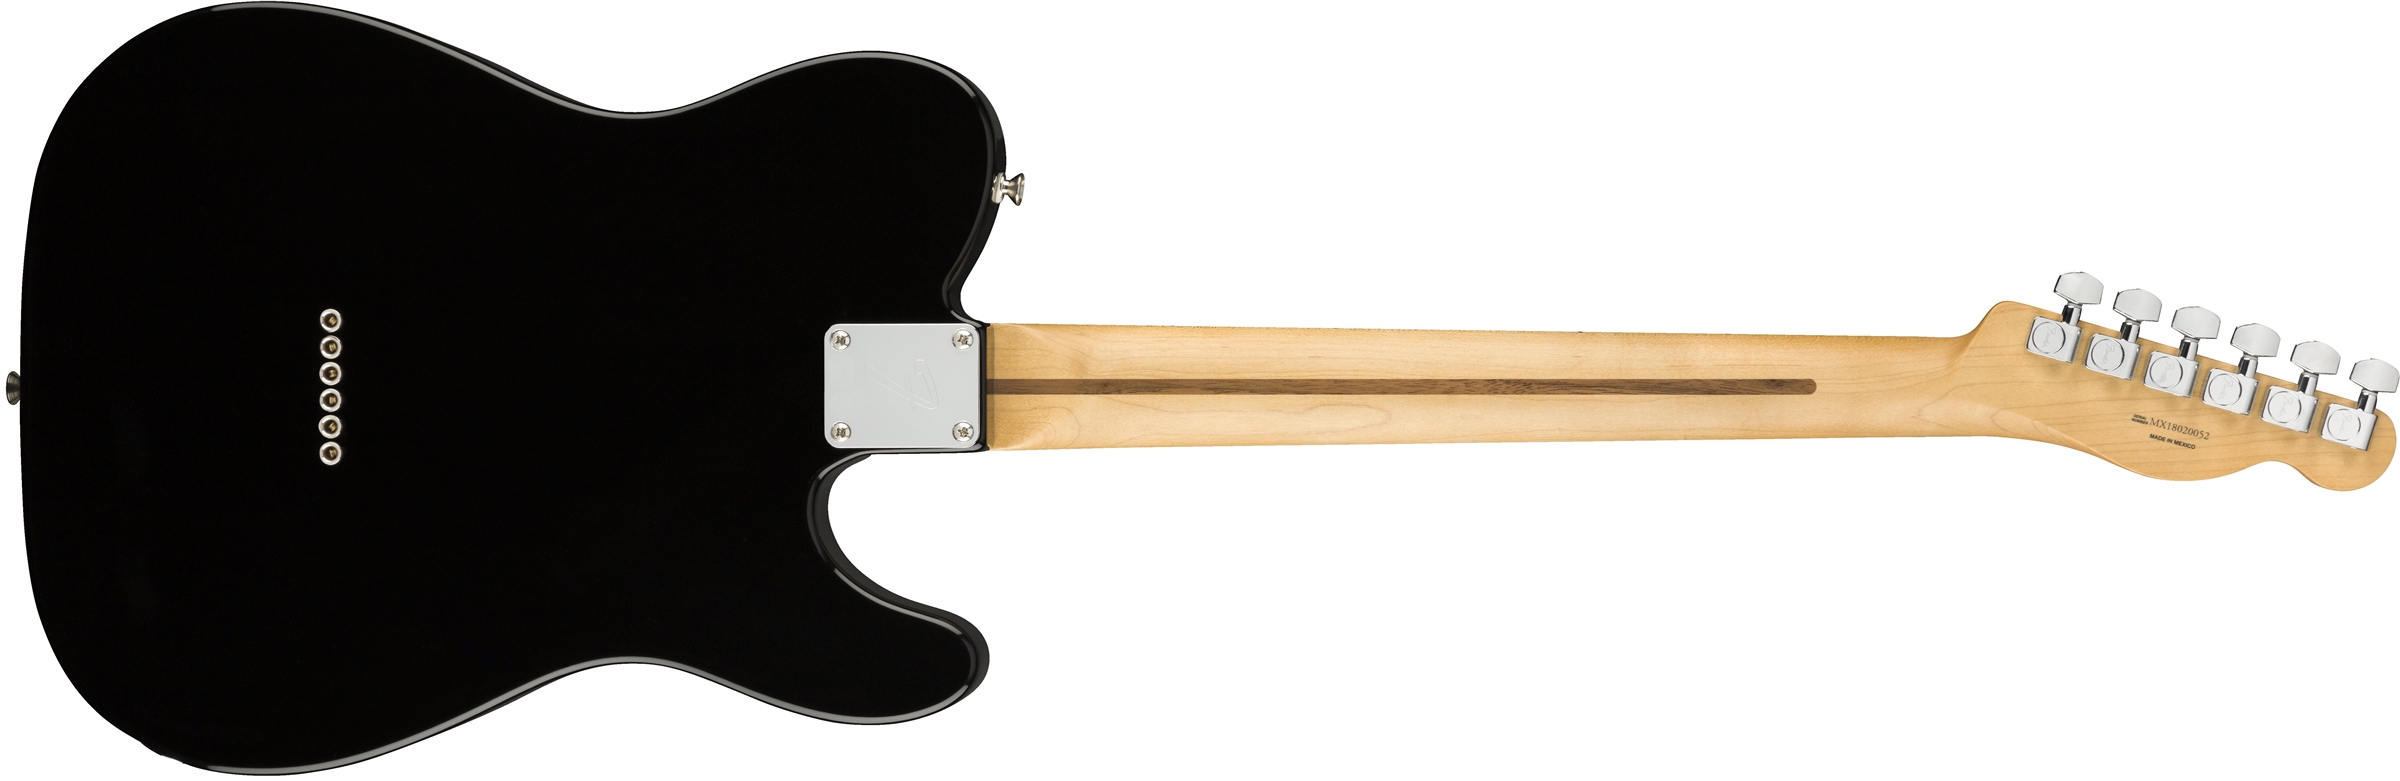 Fender Tele Player Lh Gaucher Mex Ss Mn - Black - Guitarra electrica para zurdos - Variation 1